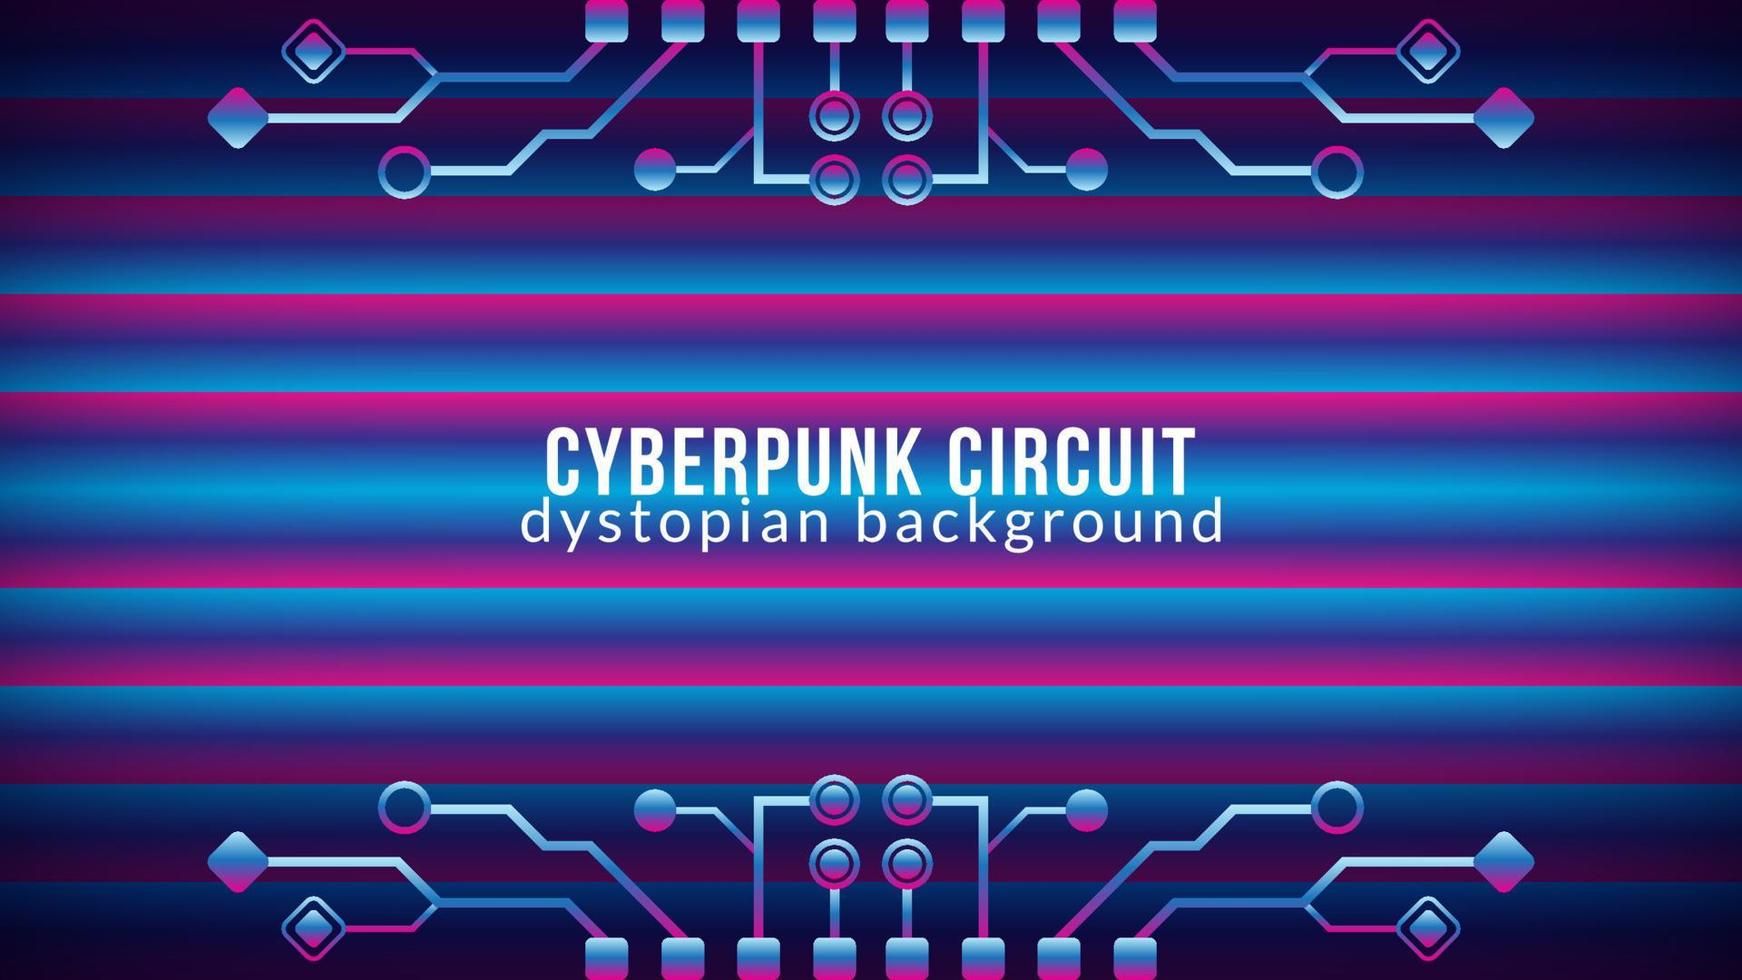 cyberpunk krets med lutning bar mönster. dystopisk elektronisk träd form vektor illustration. abstrakt bakgrund design mall. blå rosa lila violett lutning Färg tema.